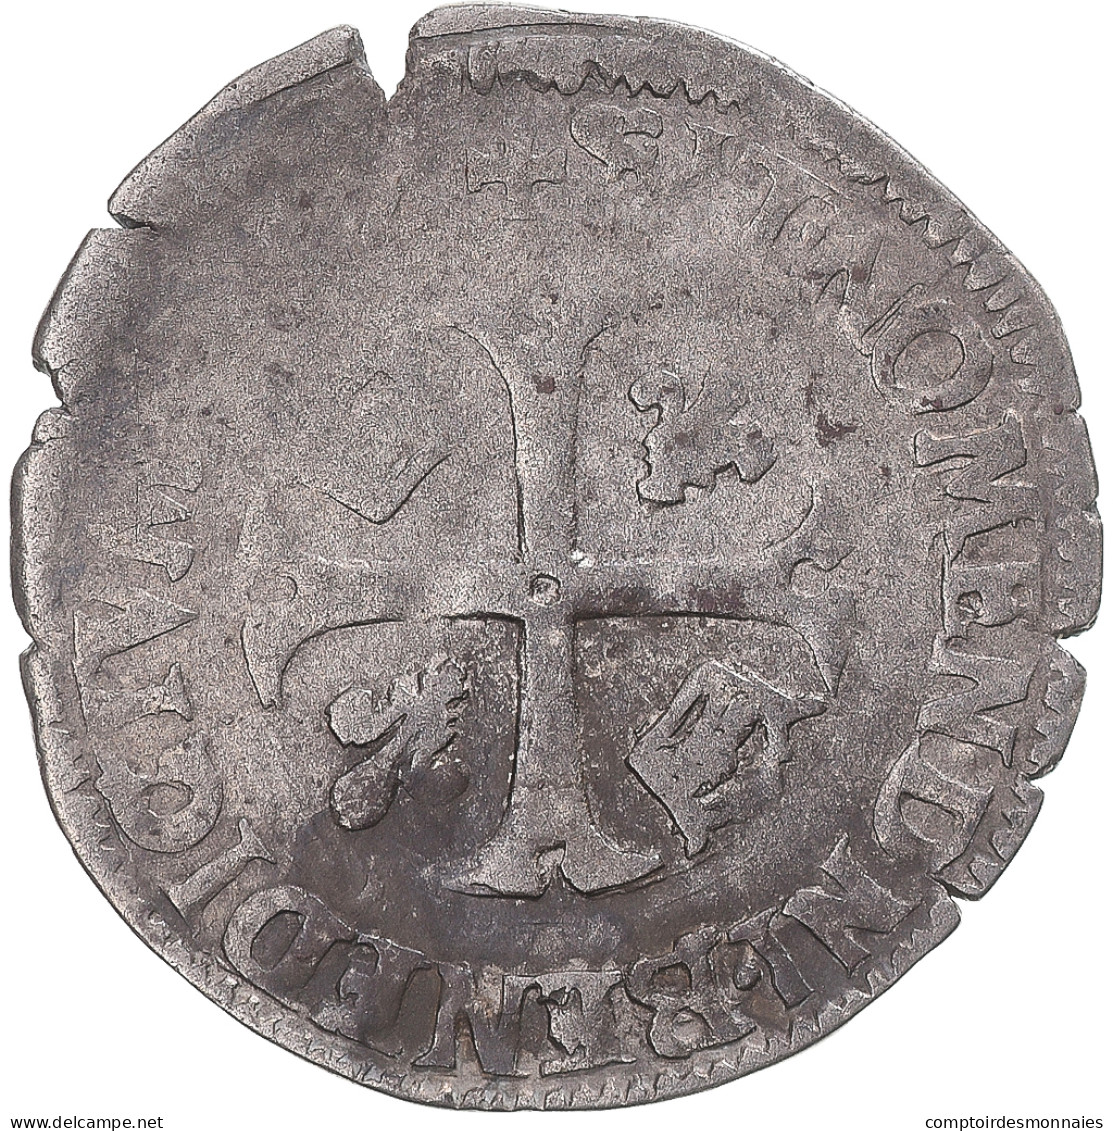 Monnaie, France, Henri IV, Douzain Aux 2 H Couronnés, Date Incertaine - 1589-1610 Heinrich IV.